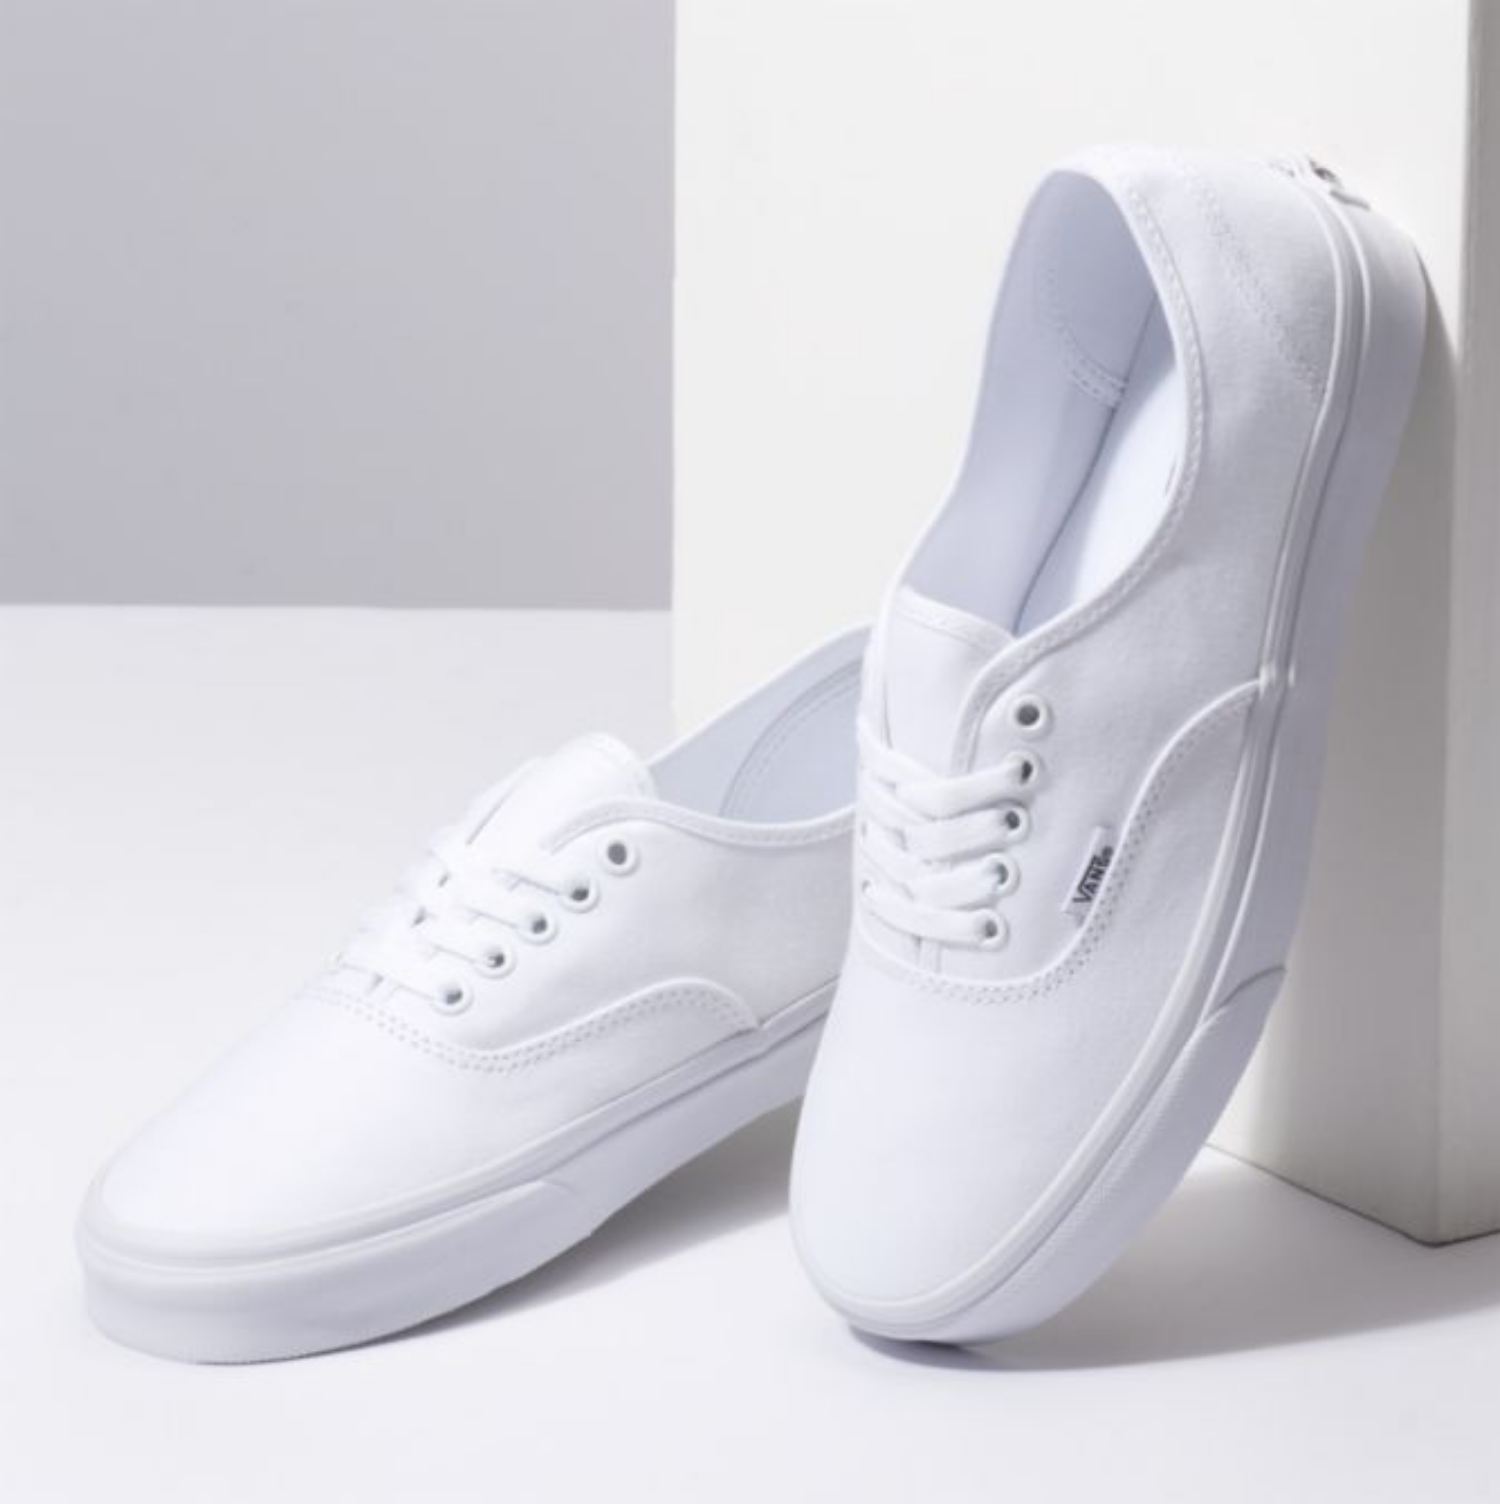 Vans Authentic True White Shoes